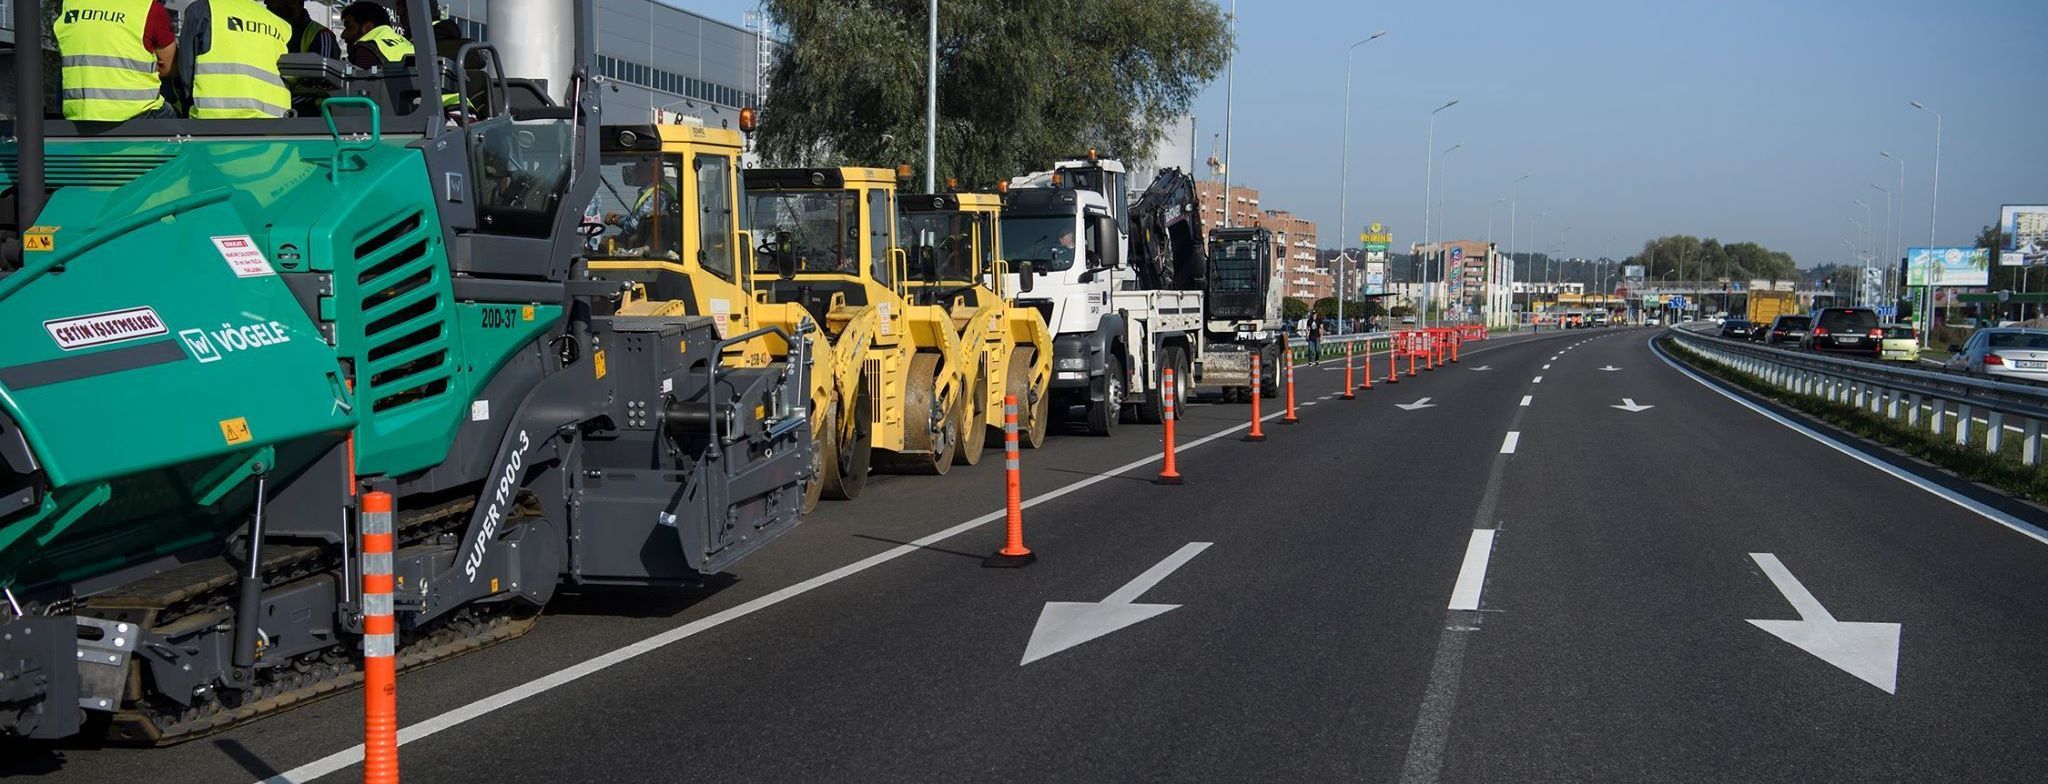 Уряд виділив півмільярда гривень на невідкладний ремонт двох автомагістралей